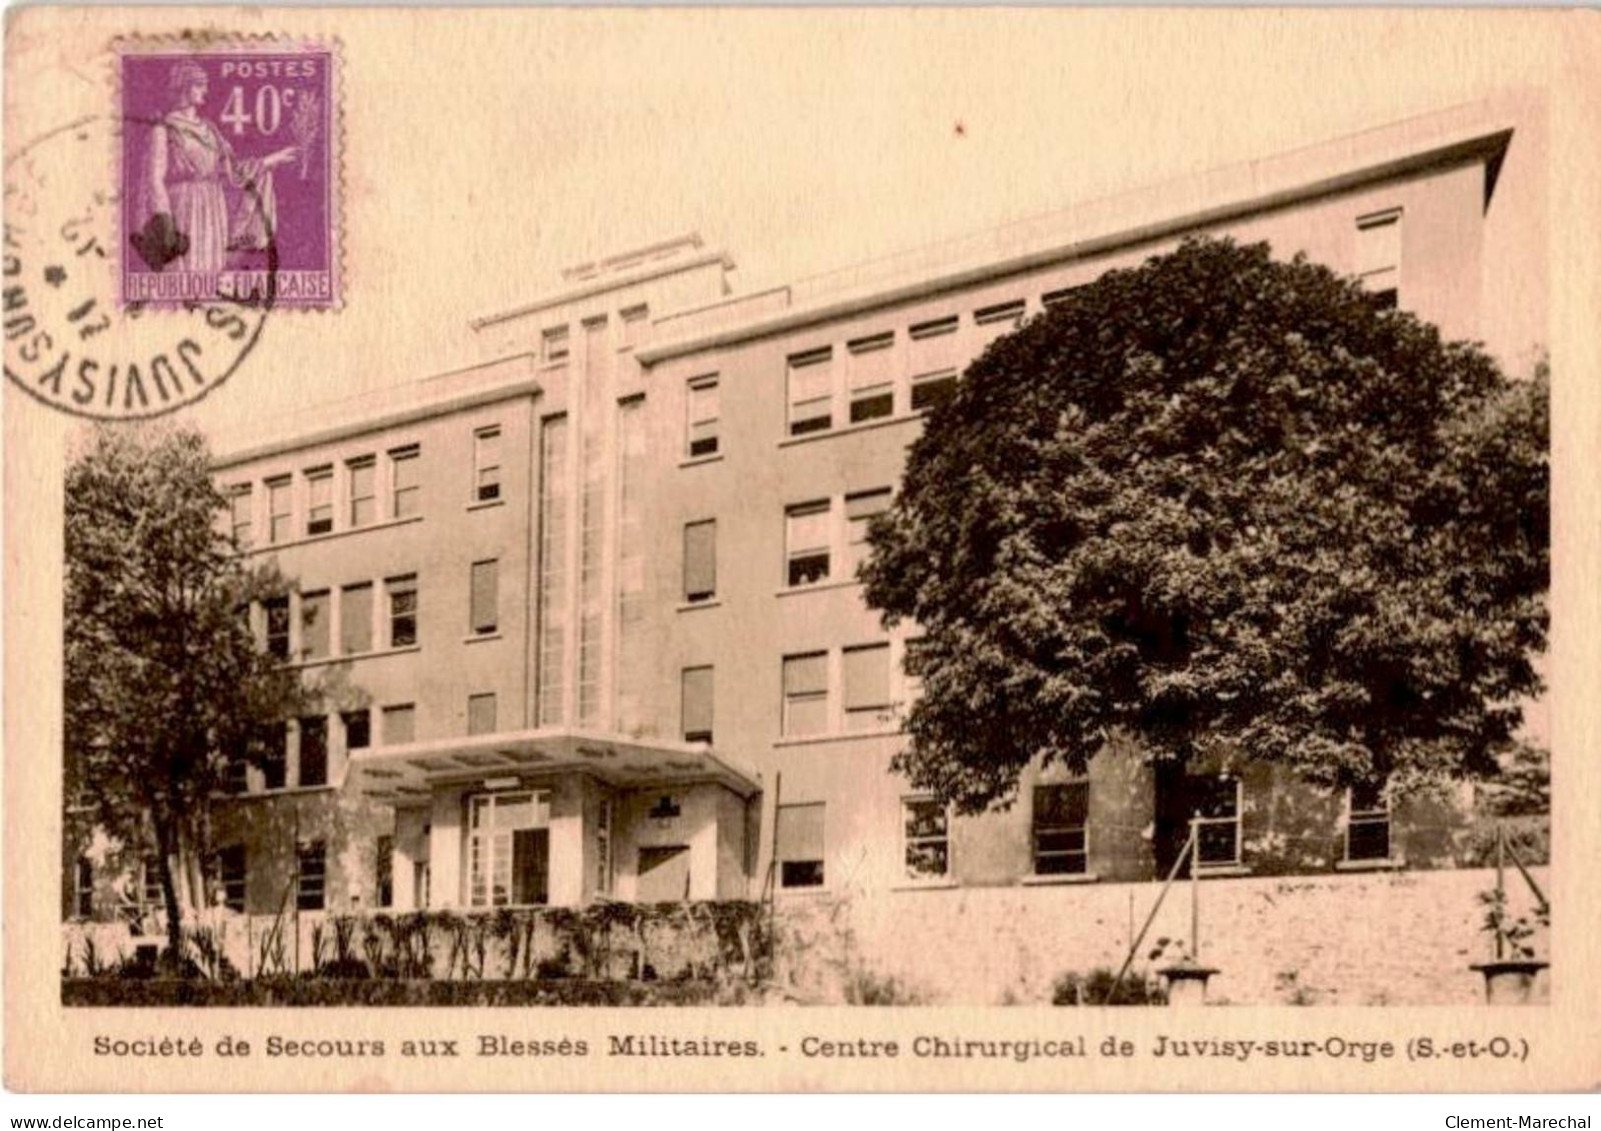 JUVISY-sur-ORGE: Société De Secours Aux Blessés Militaires Centre Chirurgical - Bon état - Juvisy-sur-Orge